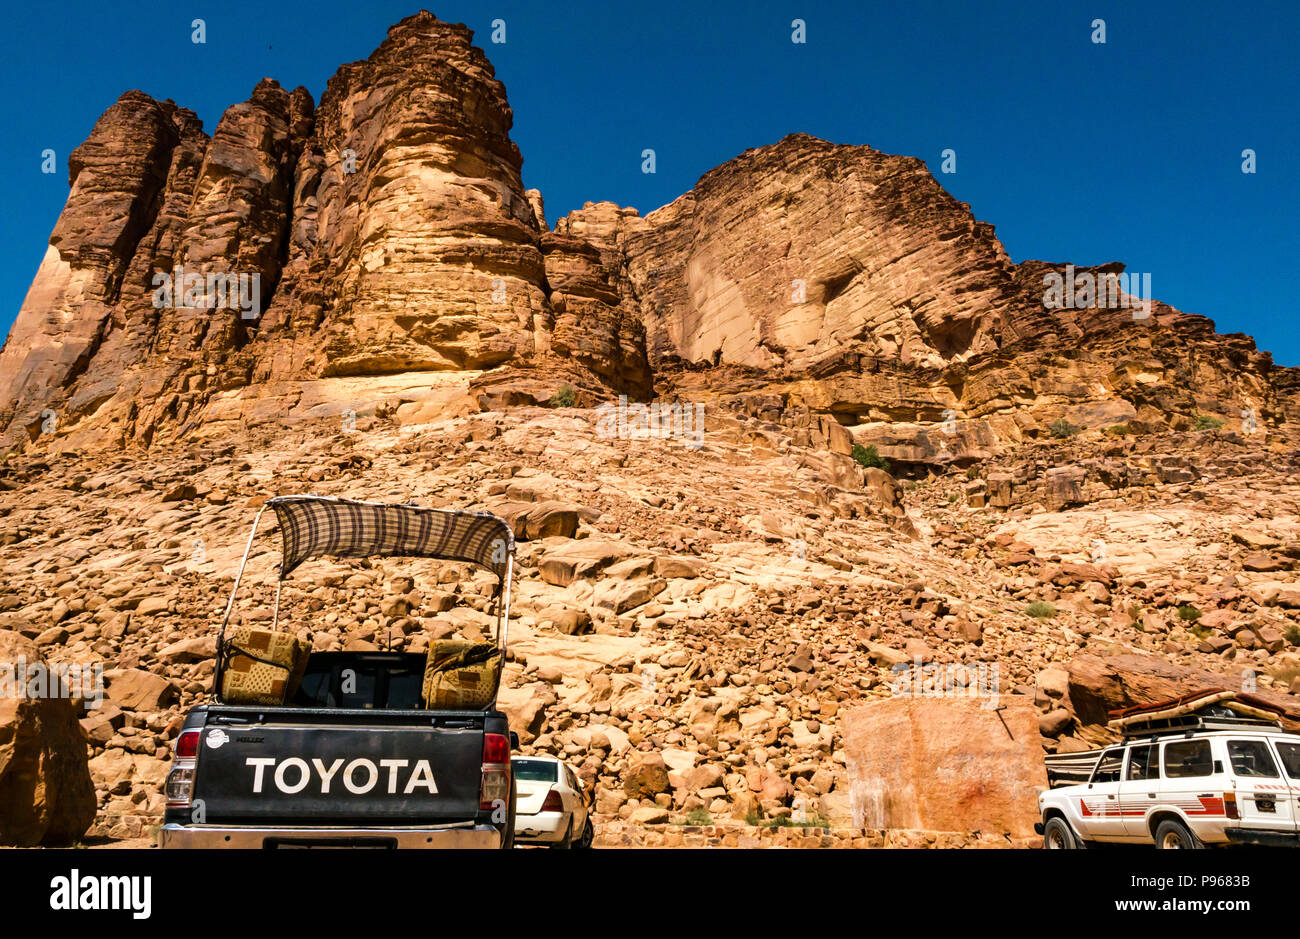 Accampamento Beduino sotto le scogliere con Toyota e 4 x4 veicoli parcheggiati, Wadi Rum vallata desertica, Giordania, Medio Oriente Foto Stock